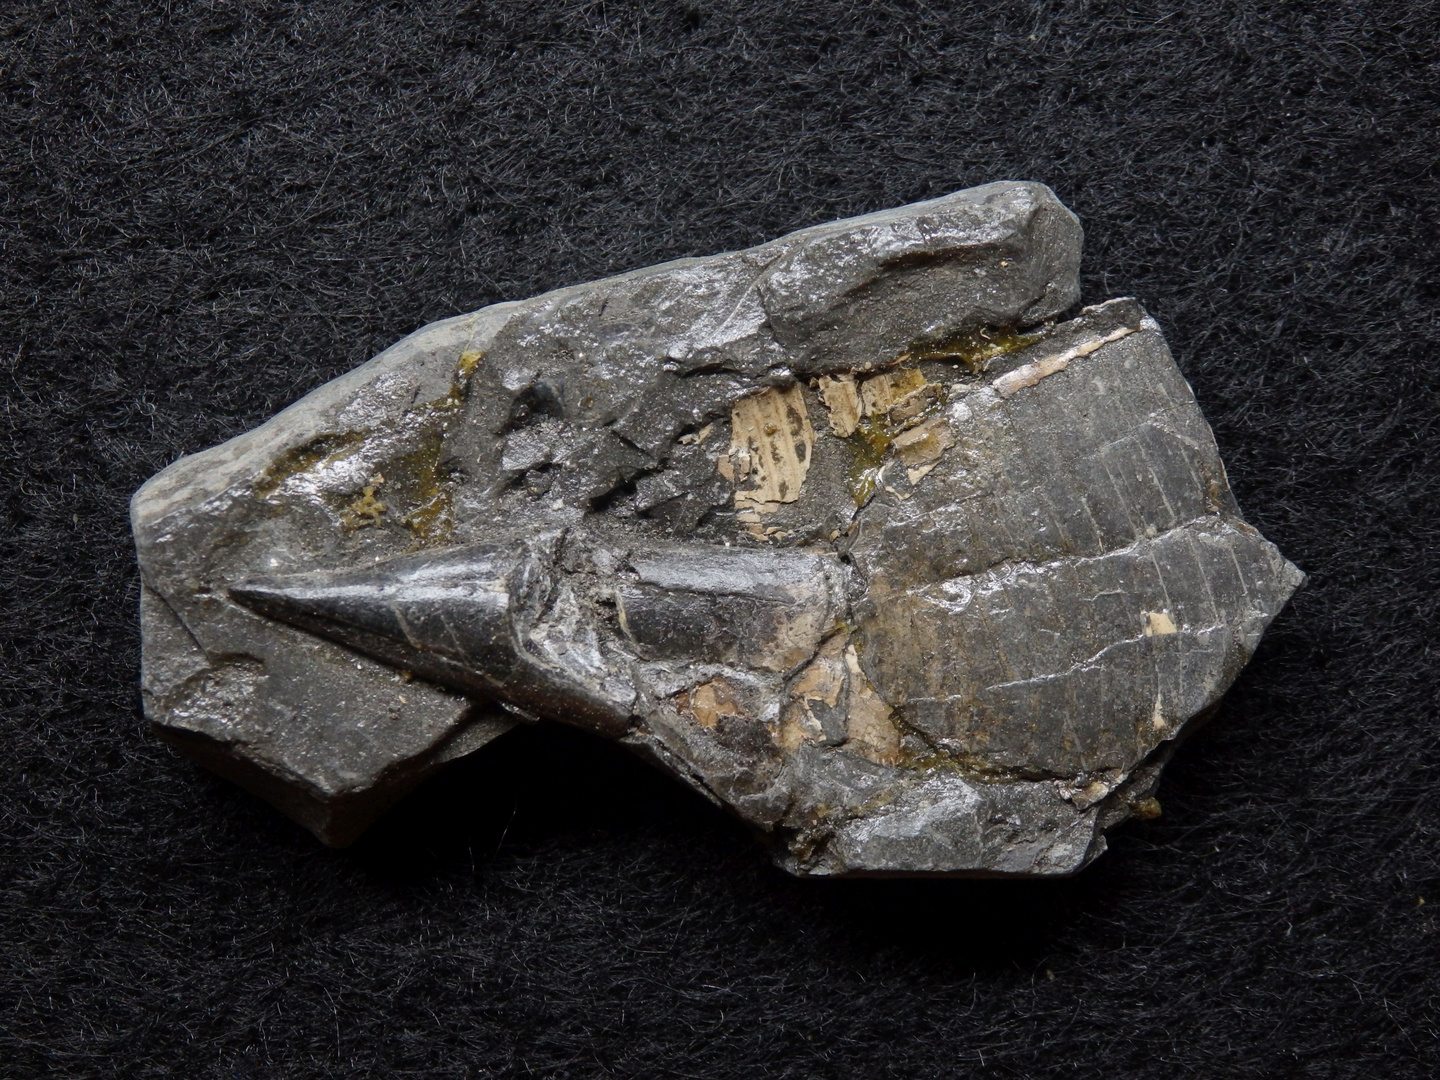 Belemnit aus der Jurazeit - Acrocoelites curtus